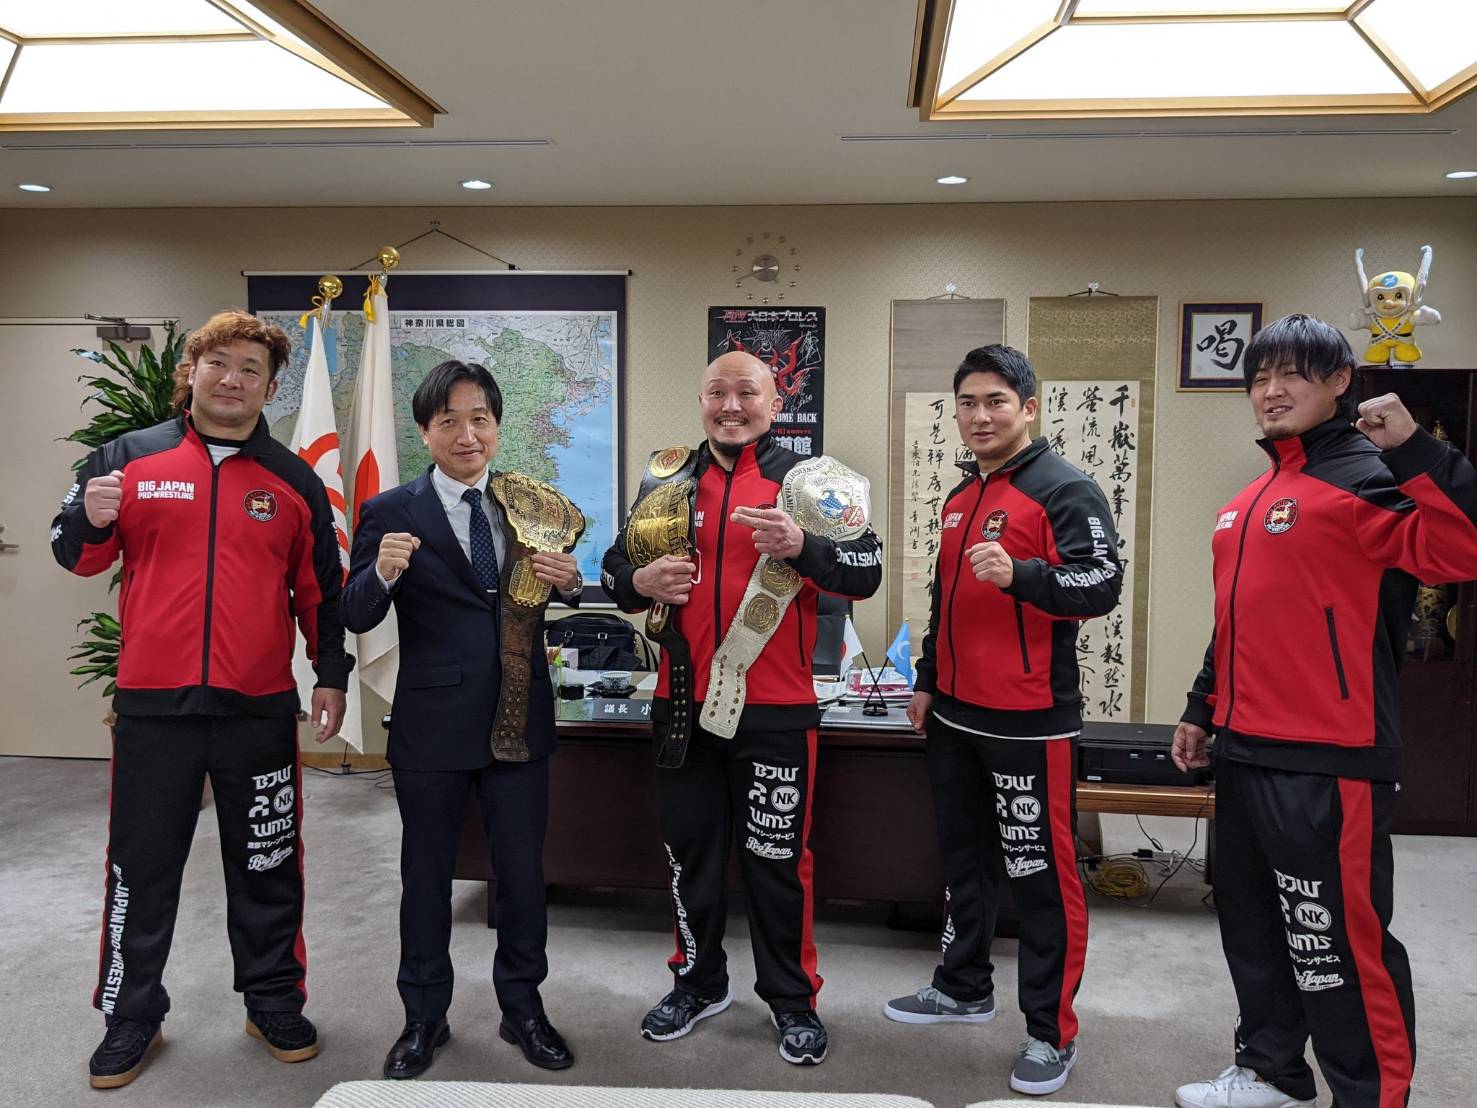 【報告】岡林裕二、中之上靖文、神谷英慶、青木優也選手が横浜市会議長、議会議長を表敬訪問いたしました